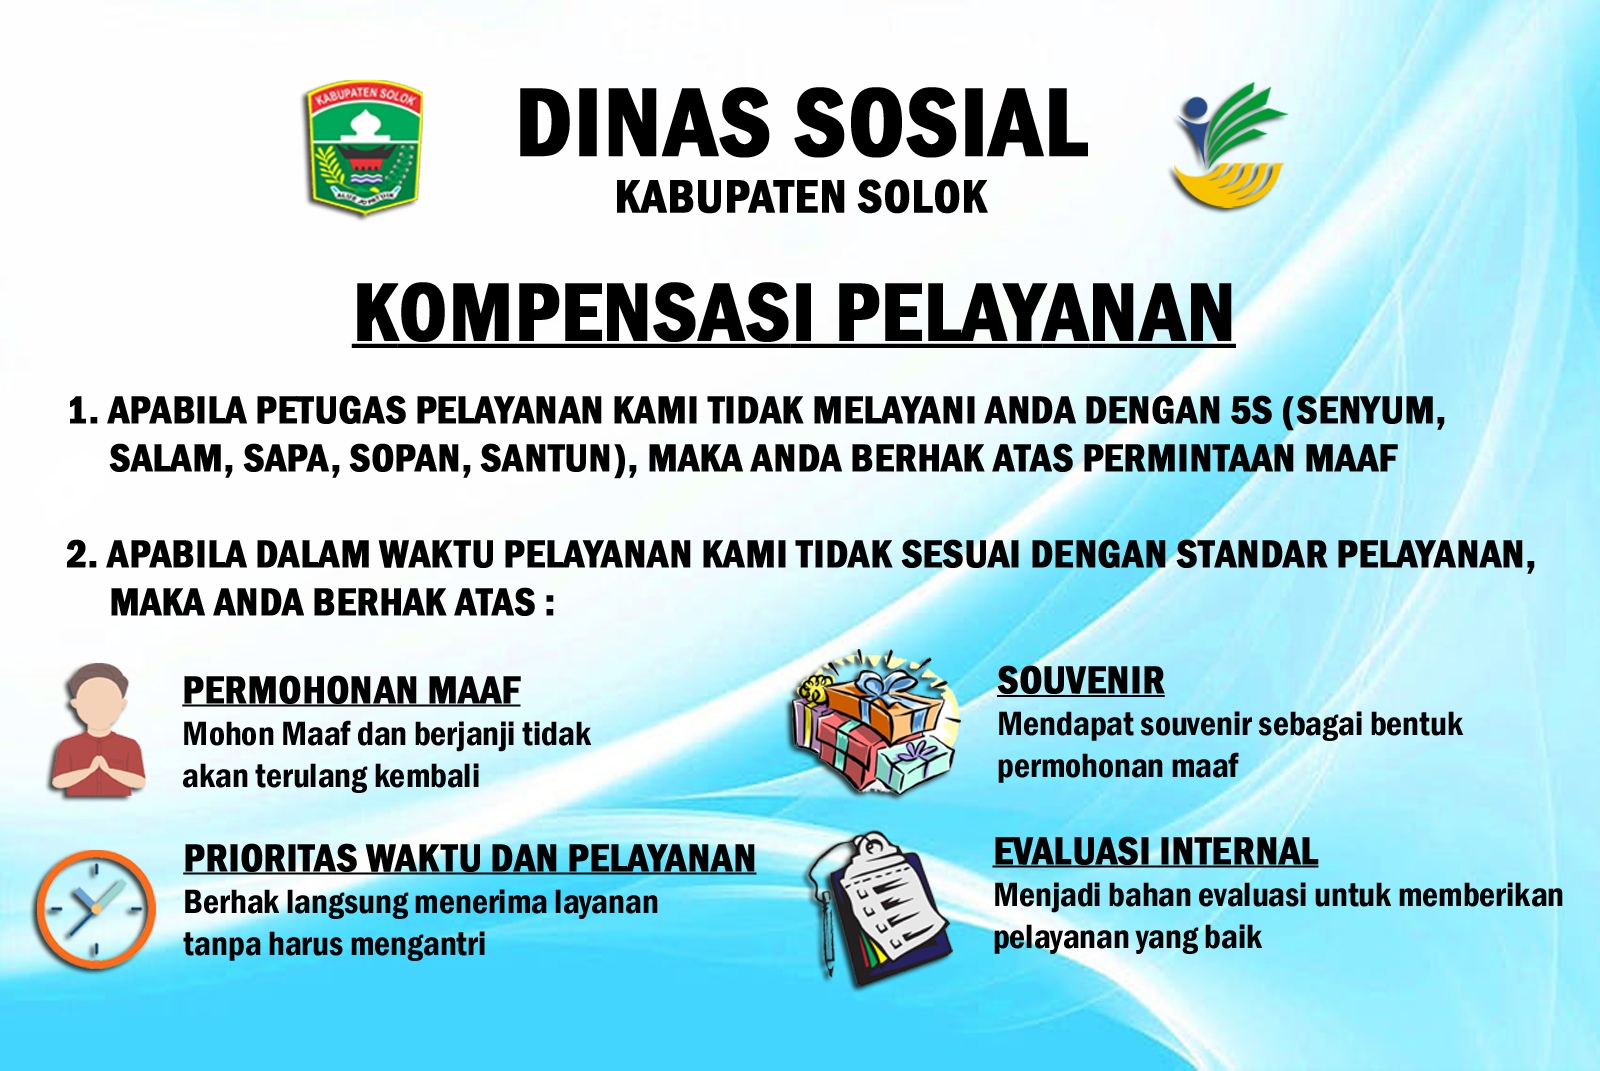 Kompensasi Pelayanan Dinas Sosial Kabupaten Solok - (Ada 0 foto)